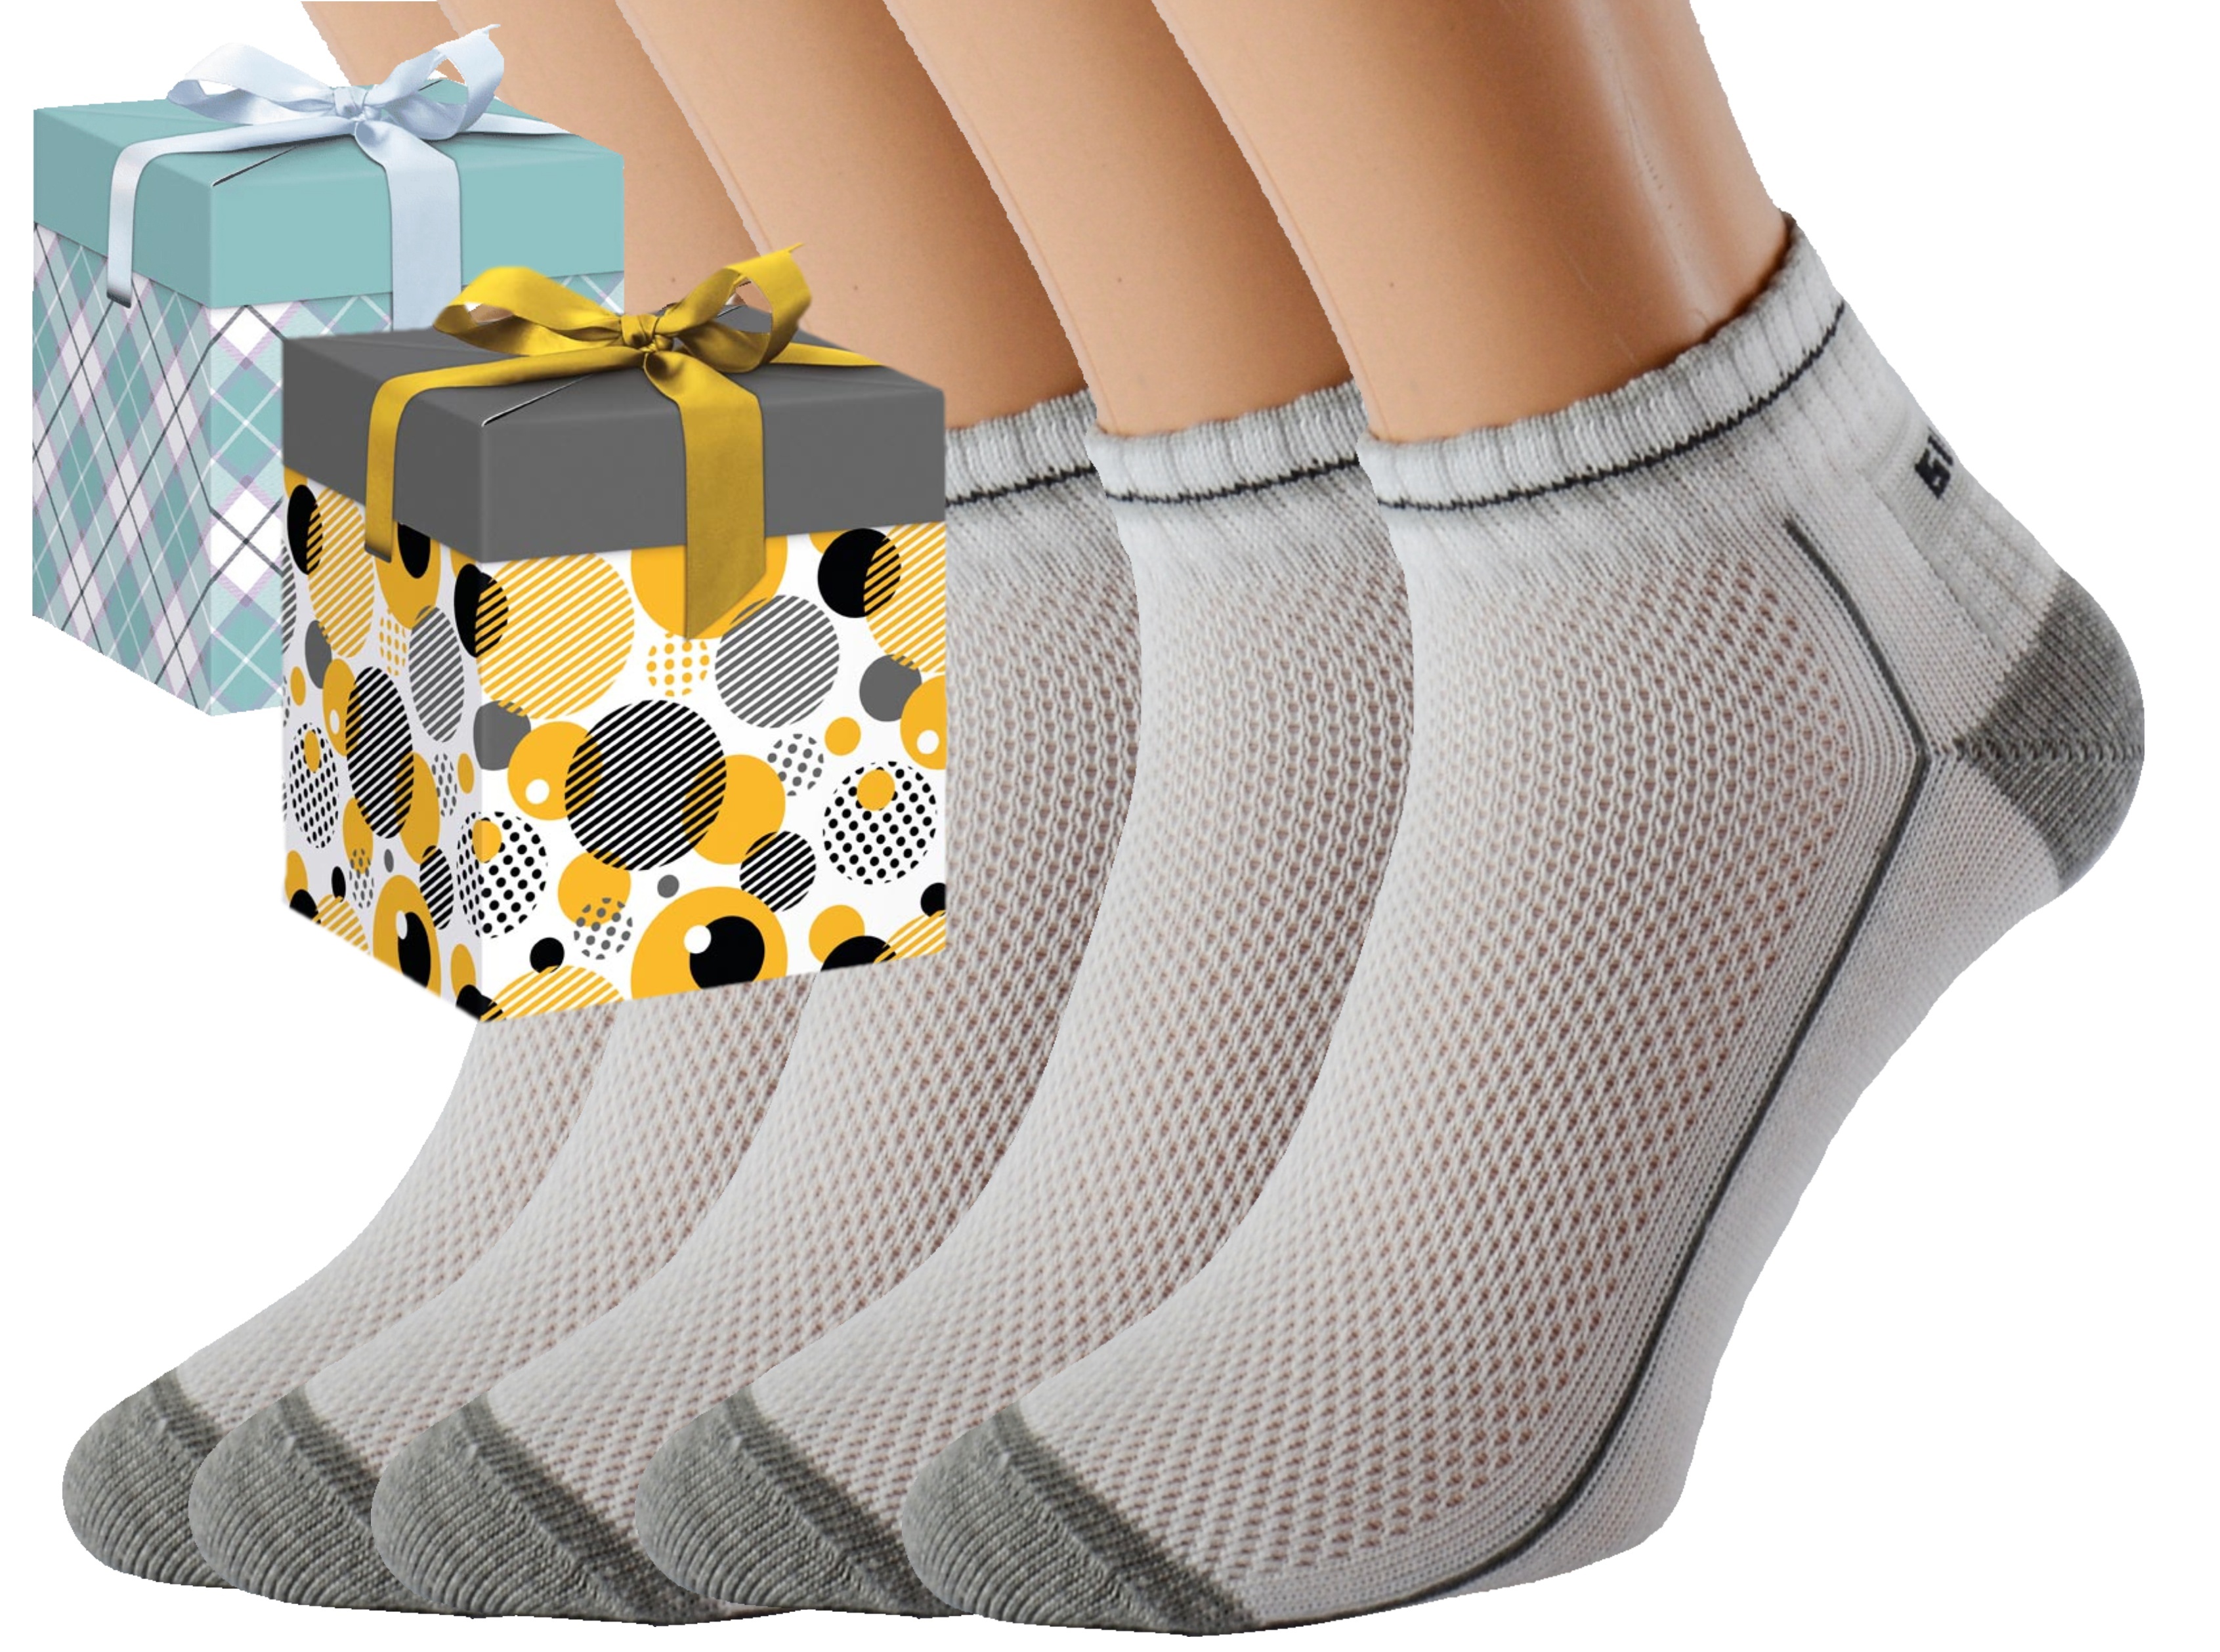 Dárkové balení 5 párů zdravotních ponožek EMIL Barva: Bílé, Velikost: EUR 35-38 (UK 3-5), Zvolte variantu dárkového balení: Modrá s oky